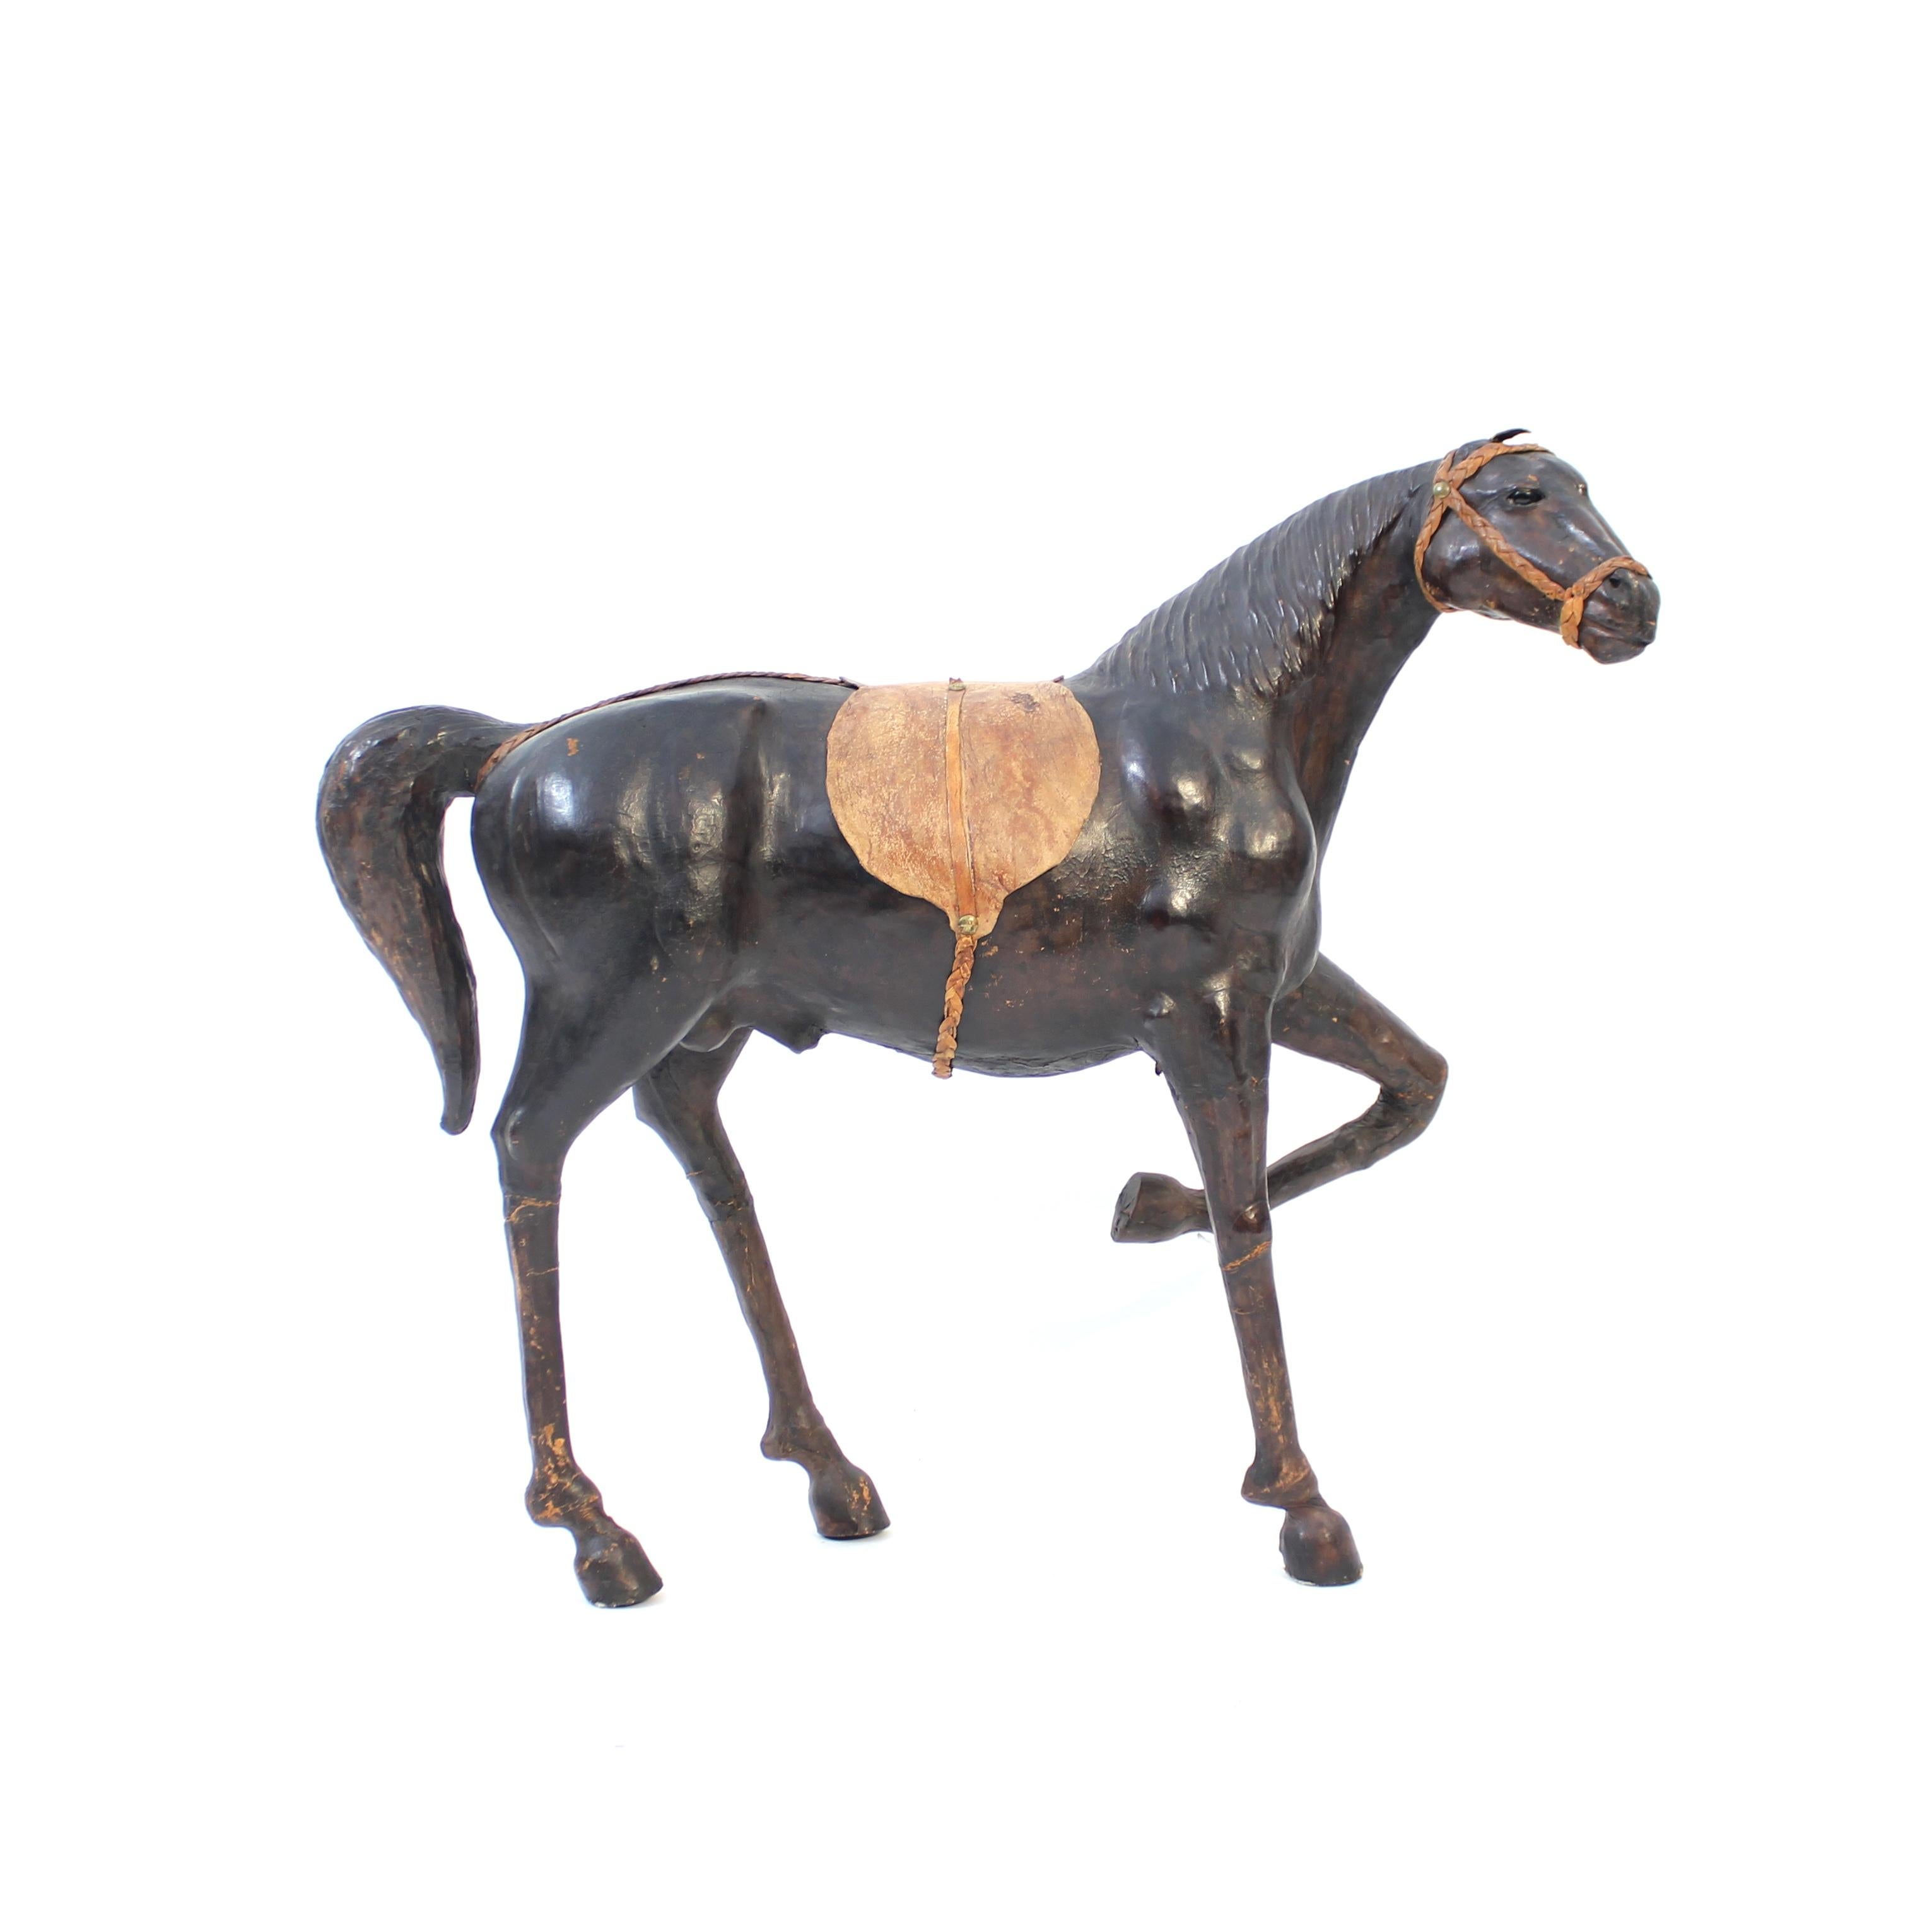 Grande et majestueuse sculpture / modèle de cheval en cuir véritable des années 1960 ou 1970. Bien réalisé, avec de bonnes proportions et de bons détails. Très décoratif, il s'intègre parfaitement dans tout type d'intérieur, du moderne scandinave à